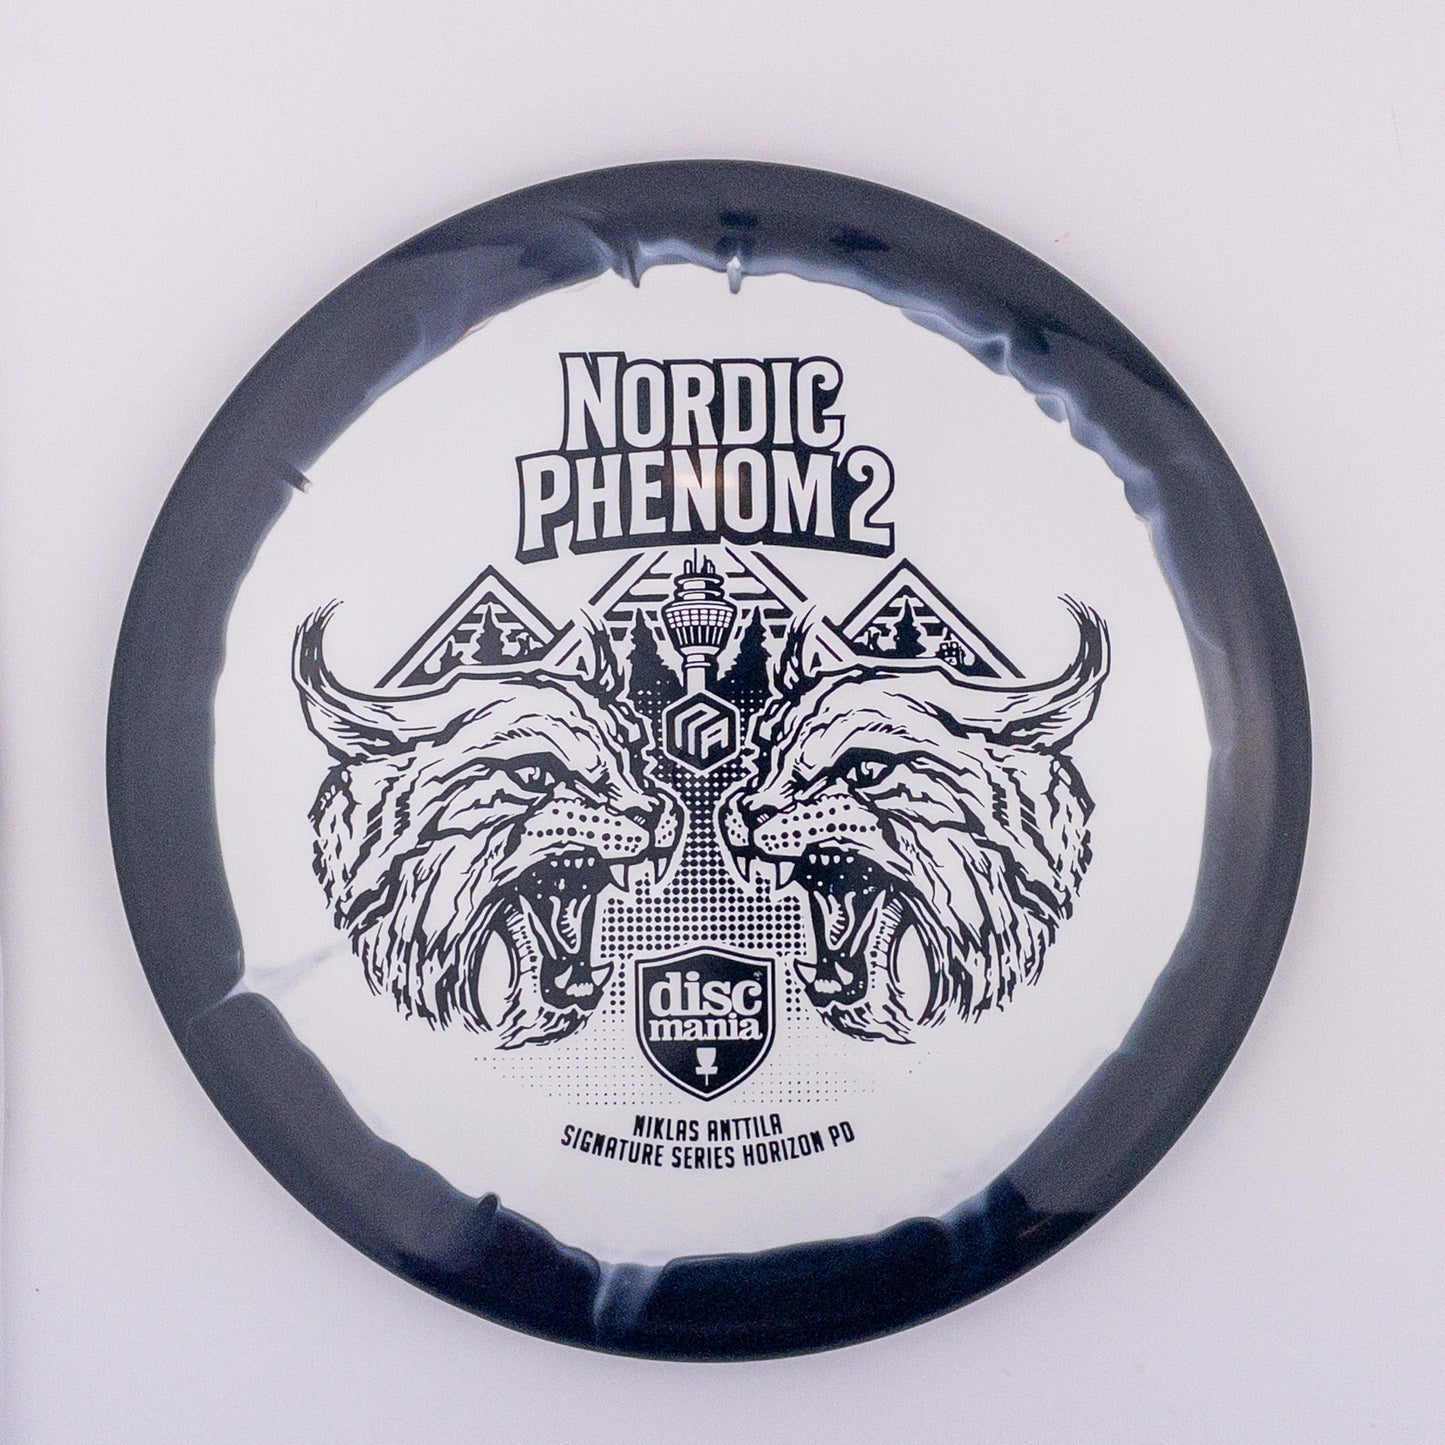 Discmania Nordic Phenom 2 Horizon PD - Niklas Anttila Signature Series